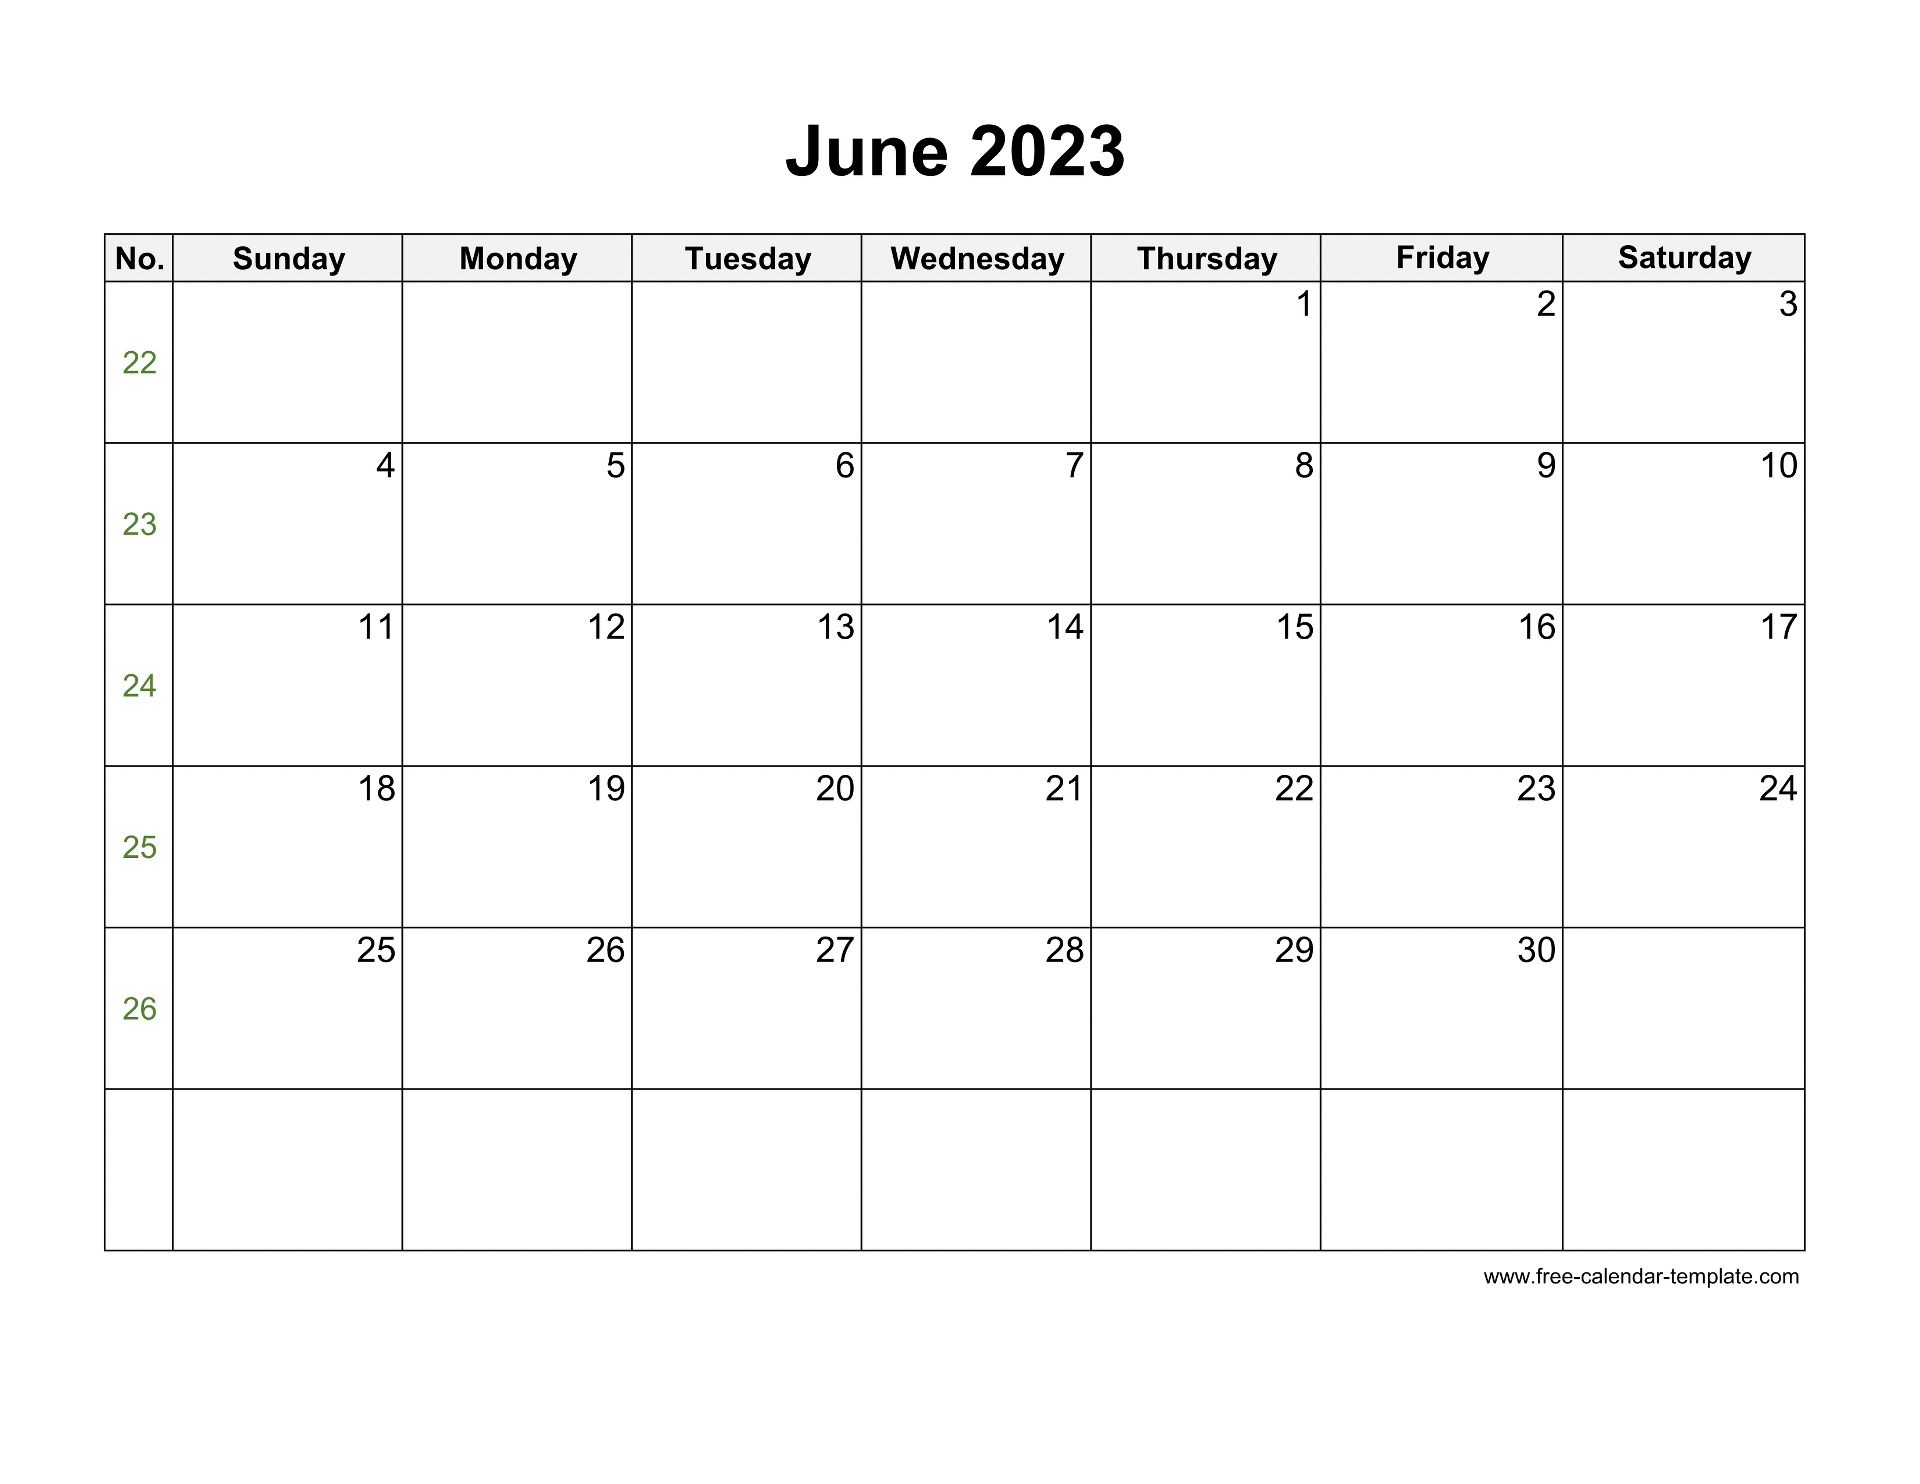 June 2023 Calendar Free Printable Calendar June 2023 Calendar Free Printable Calendar 